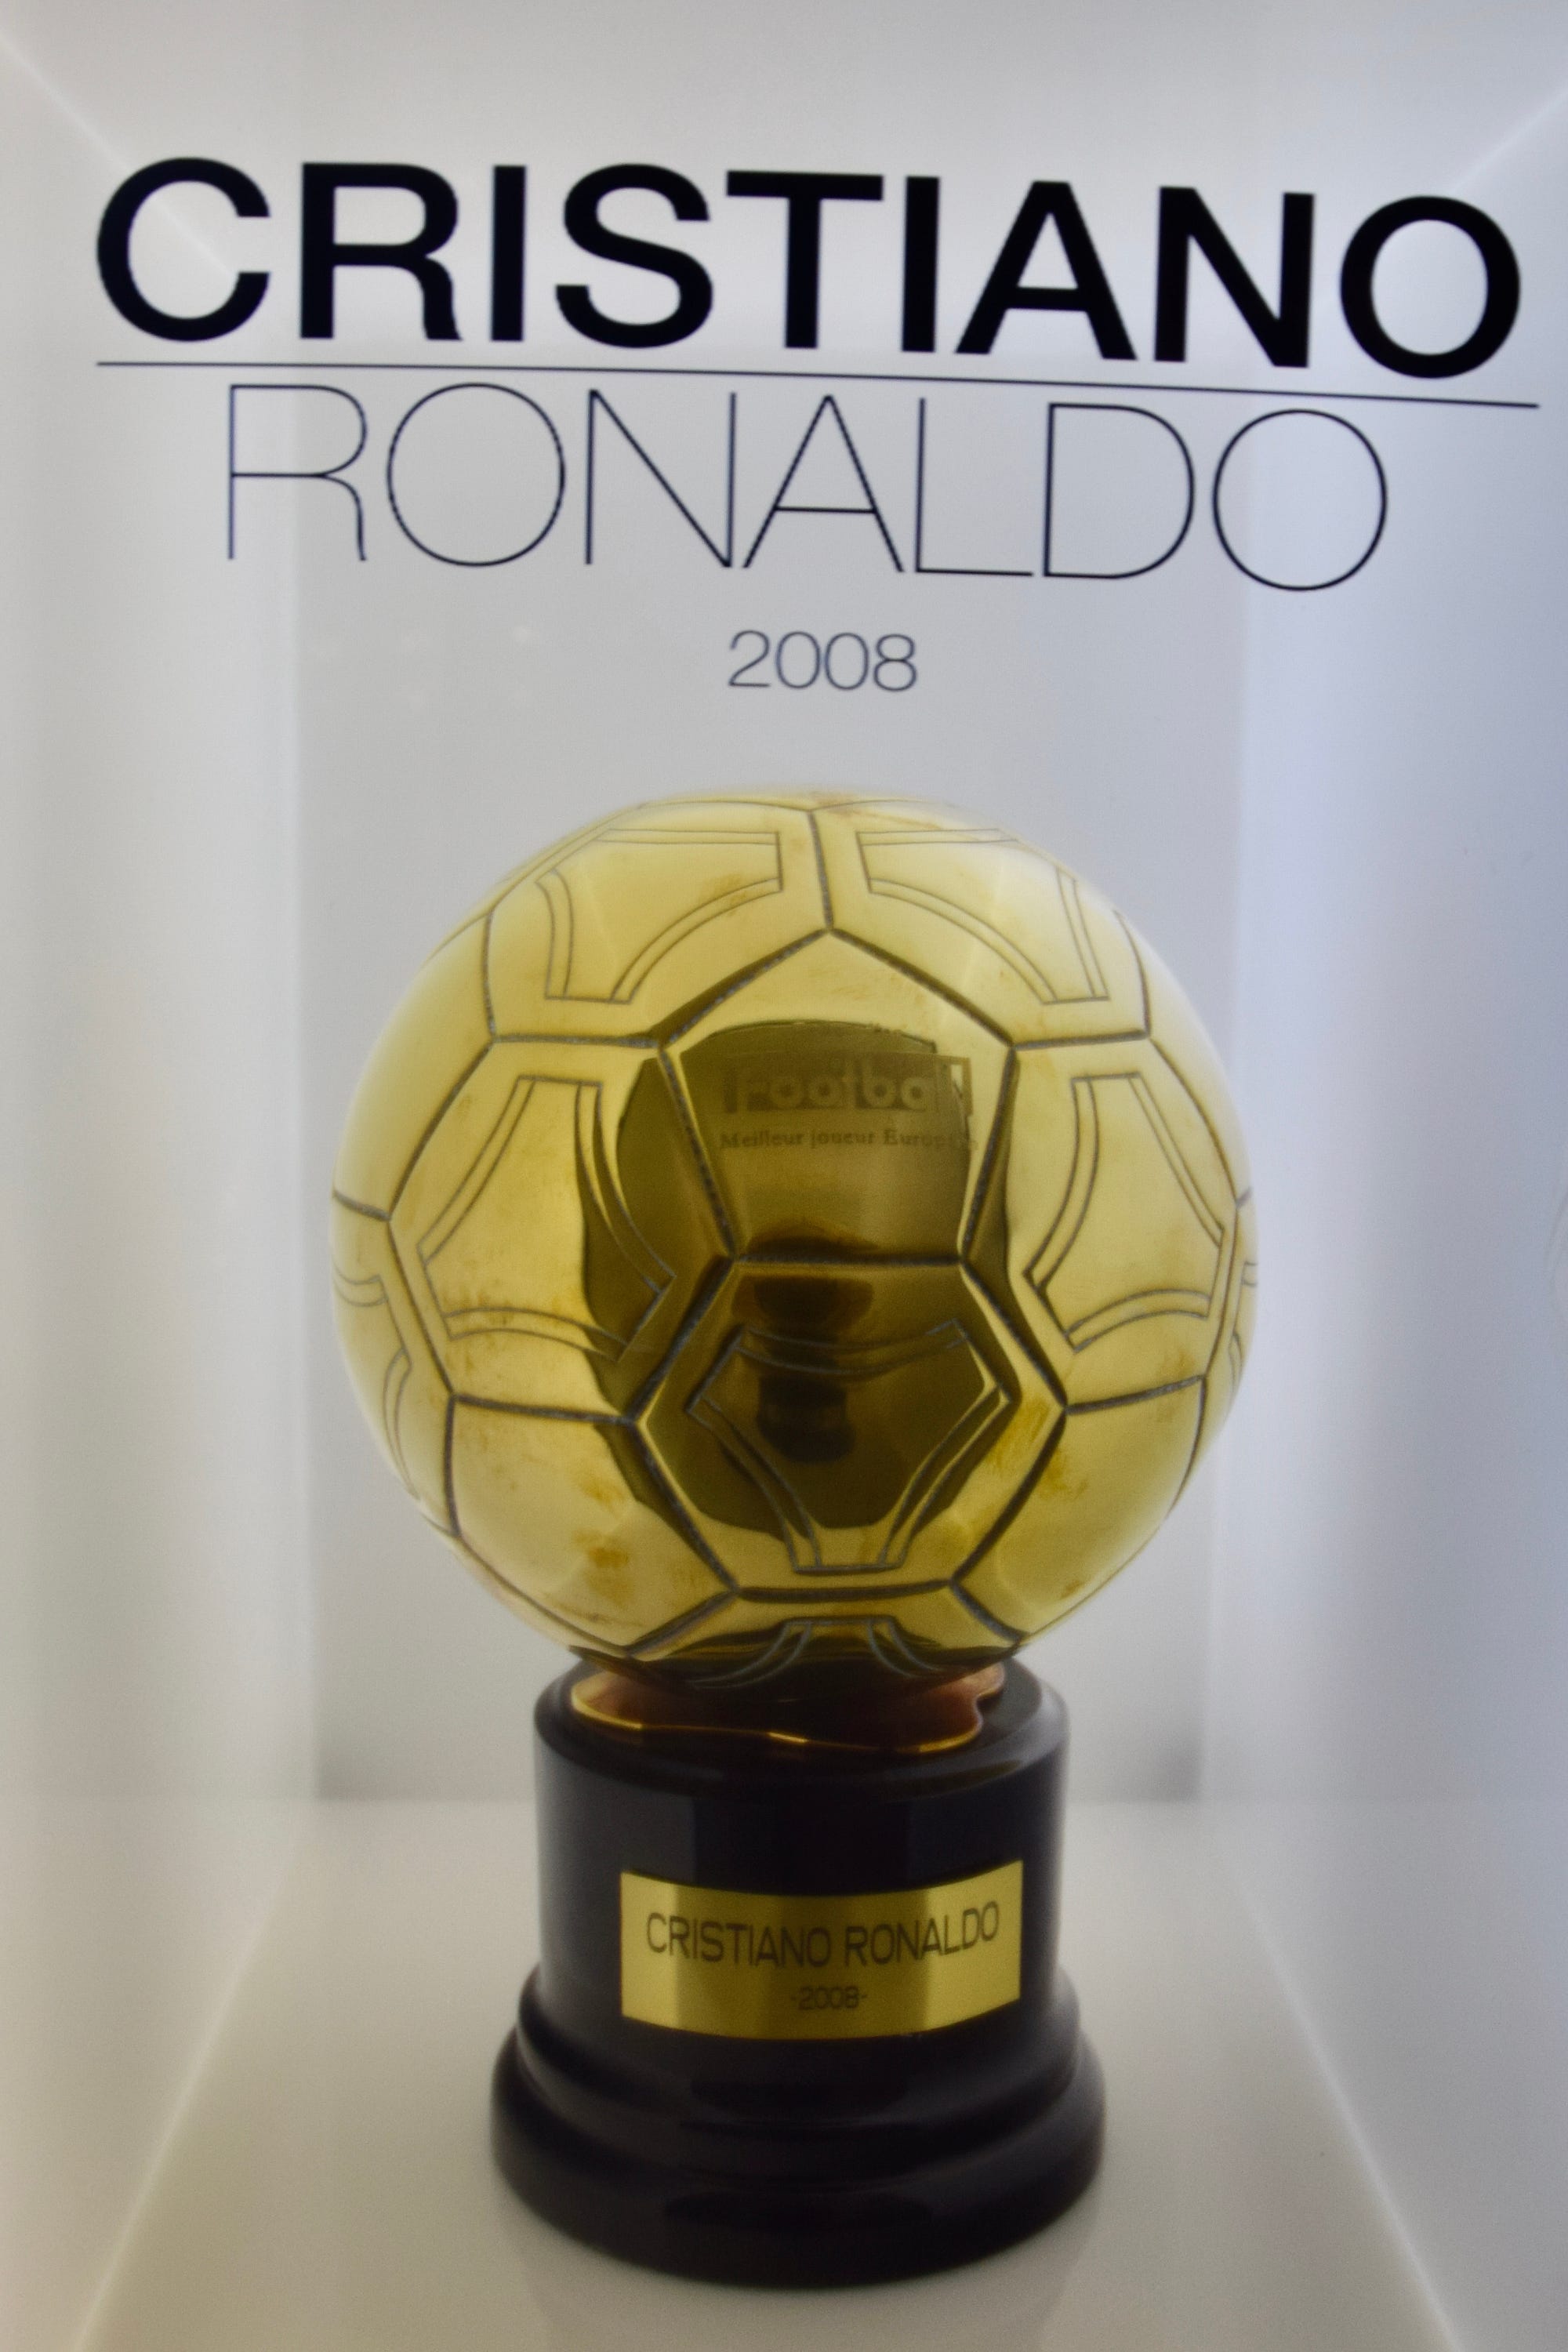 Ballon d'Or football award revamps format